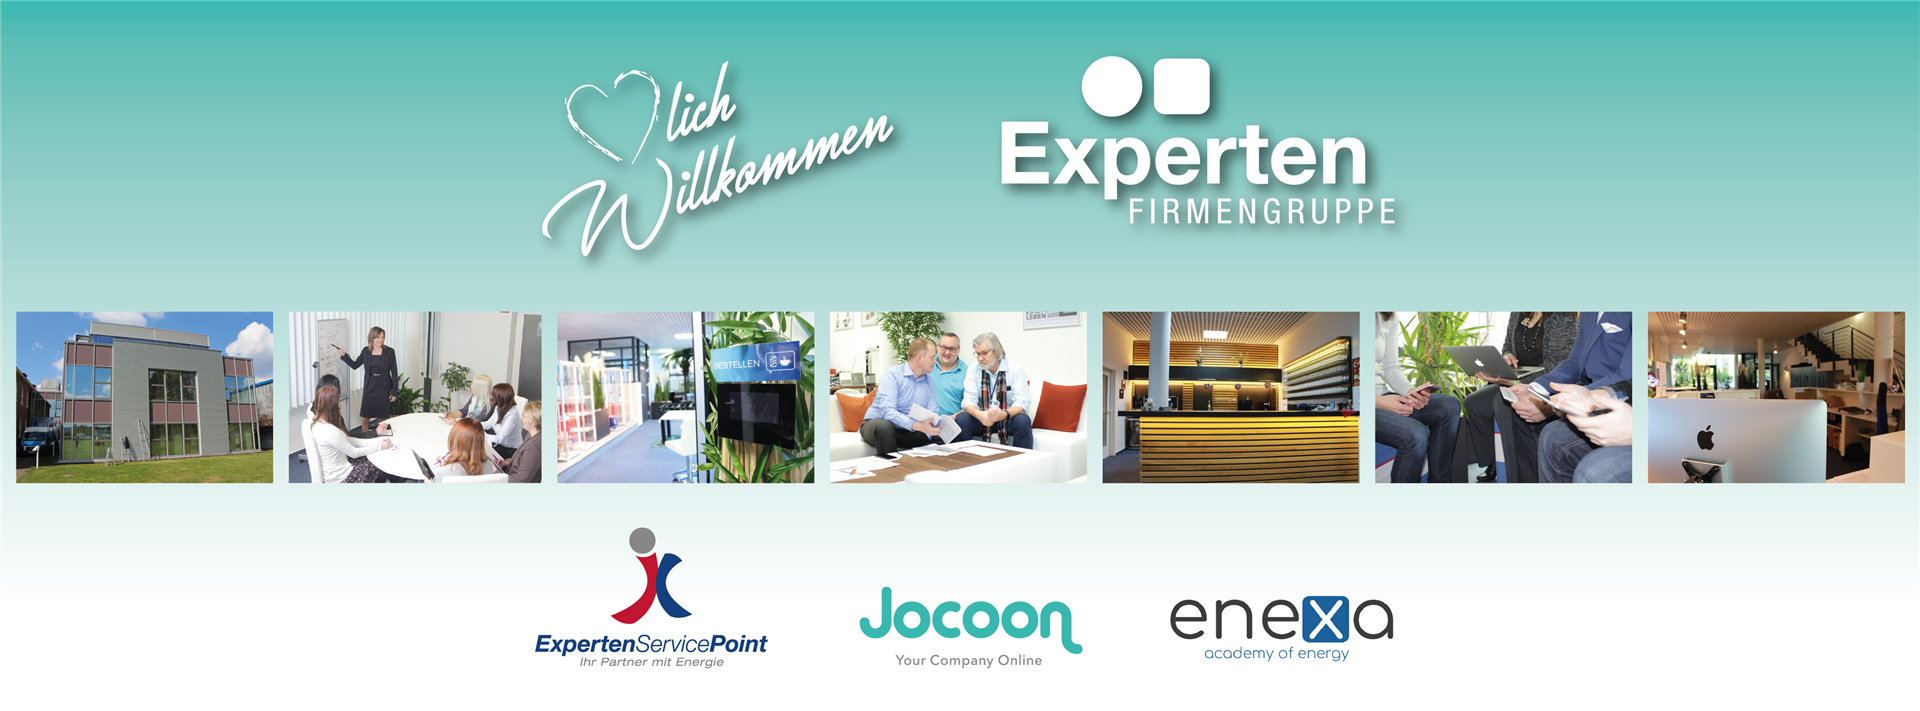 Experten Service Point GmbH | Experten